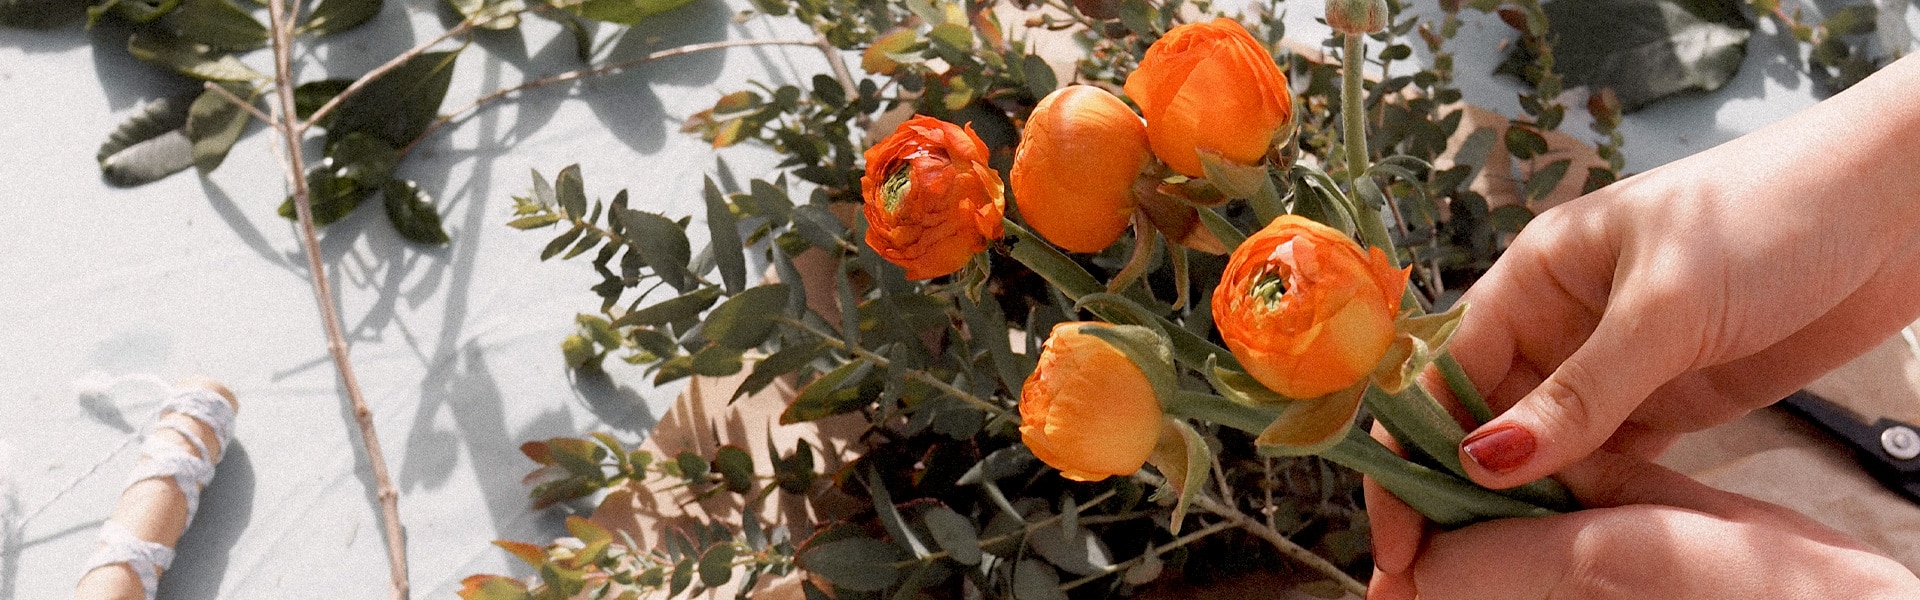 a florist arranges orange roses